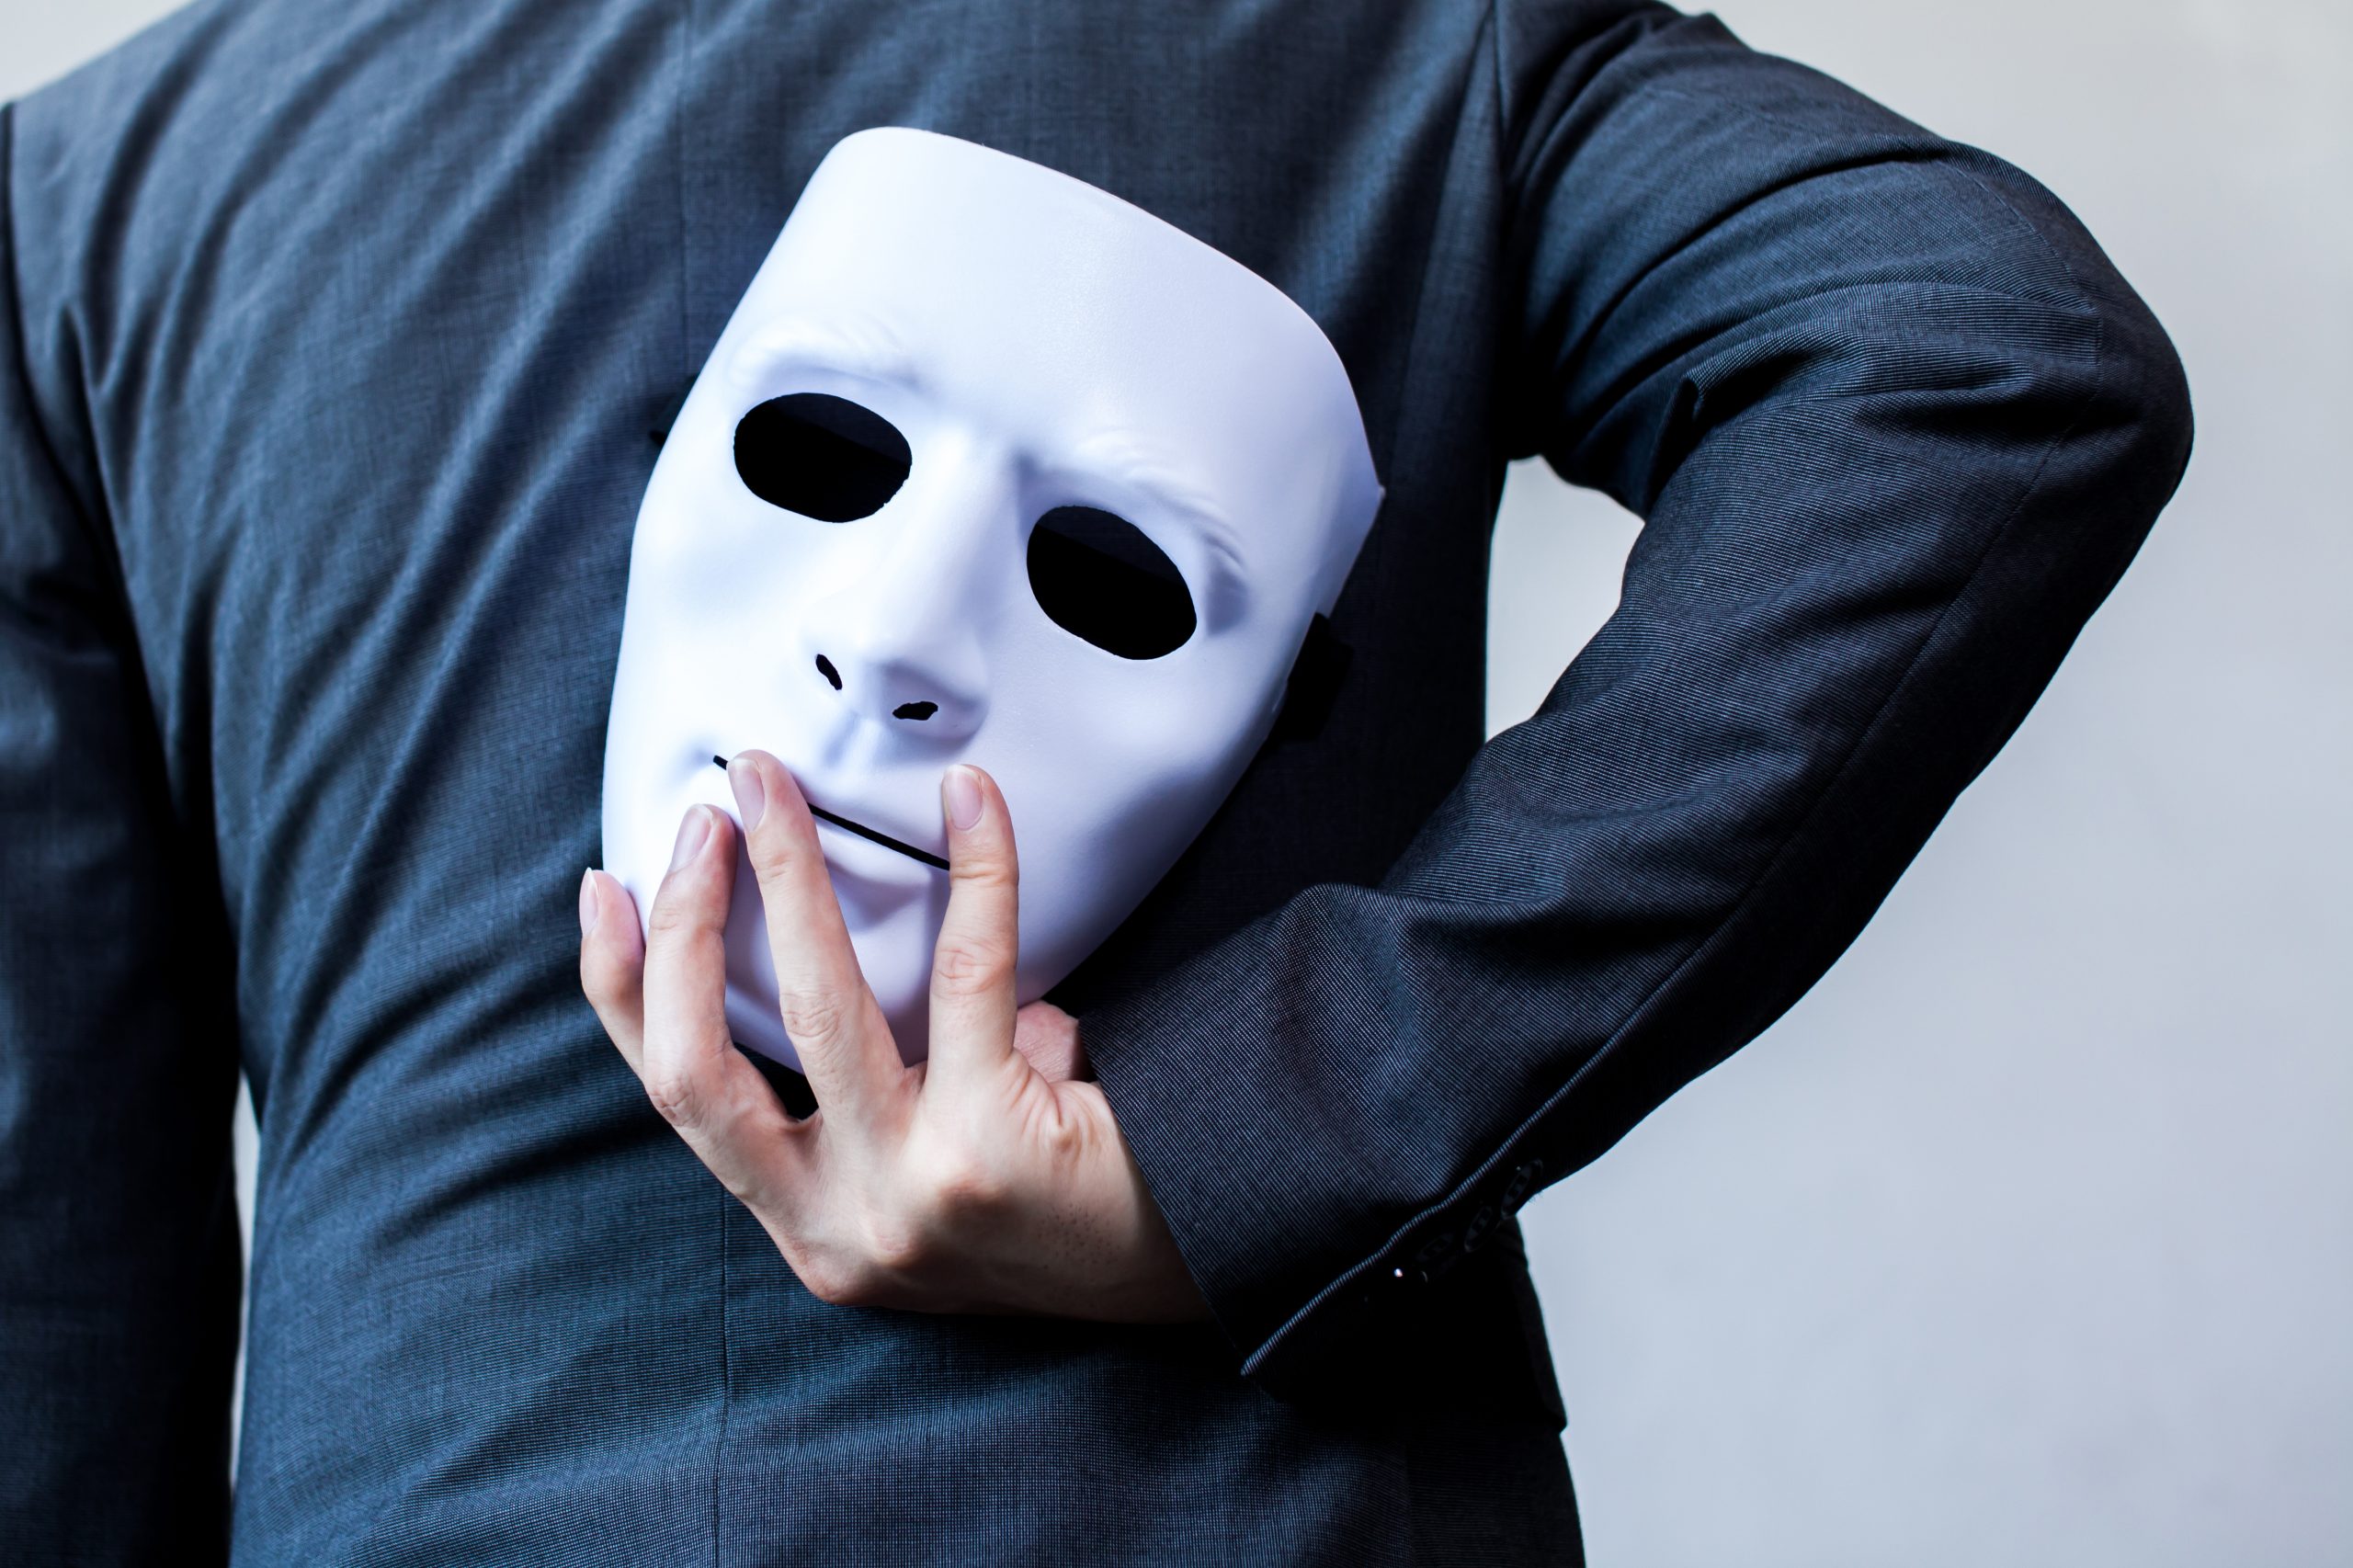 Comunicacao para Charradeau usa mascaras a fim de transmitir ou ocultar informações - InfoGeekie - Alex Contin